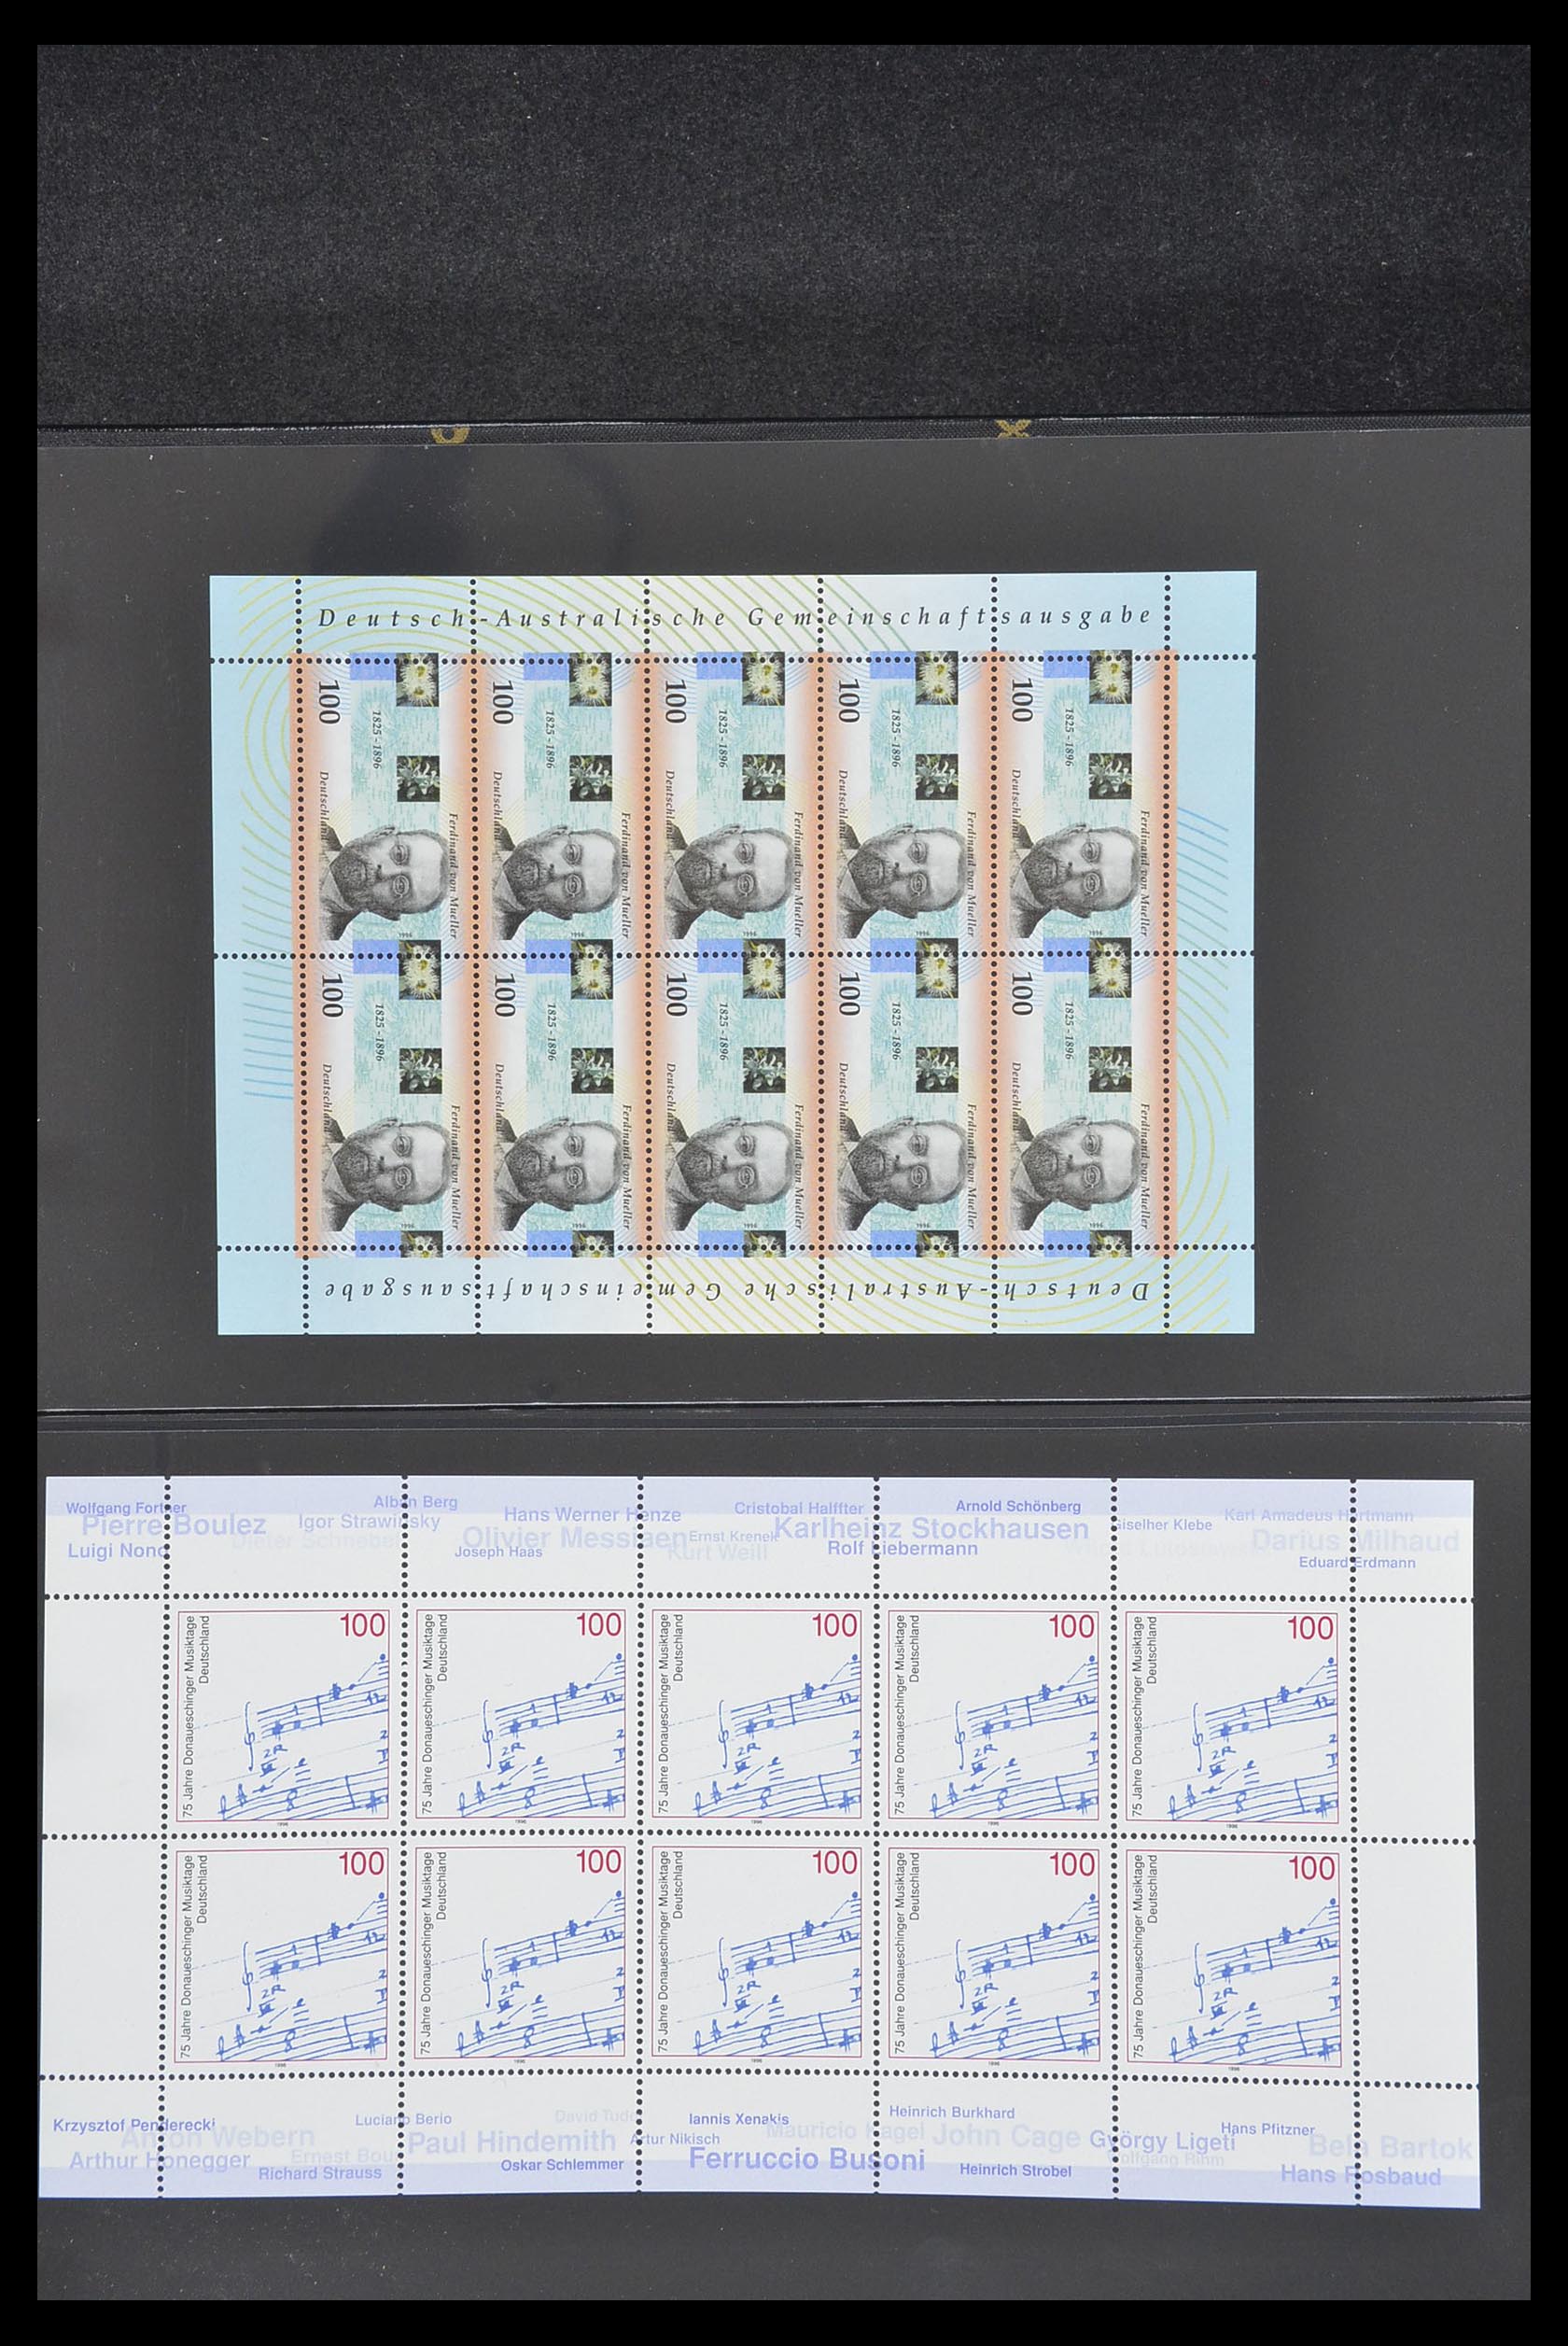 33936 062 - Stamp collection 33936 Bundespost kleinbogen 1994-2000.